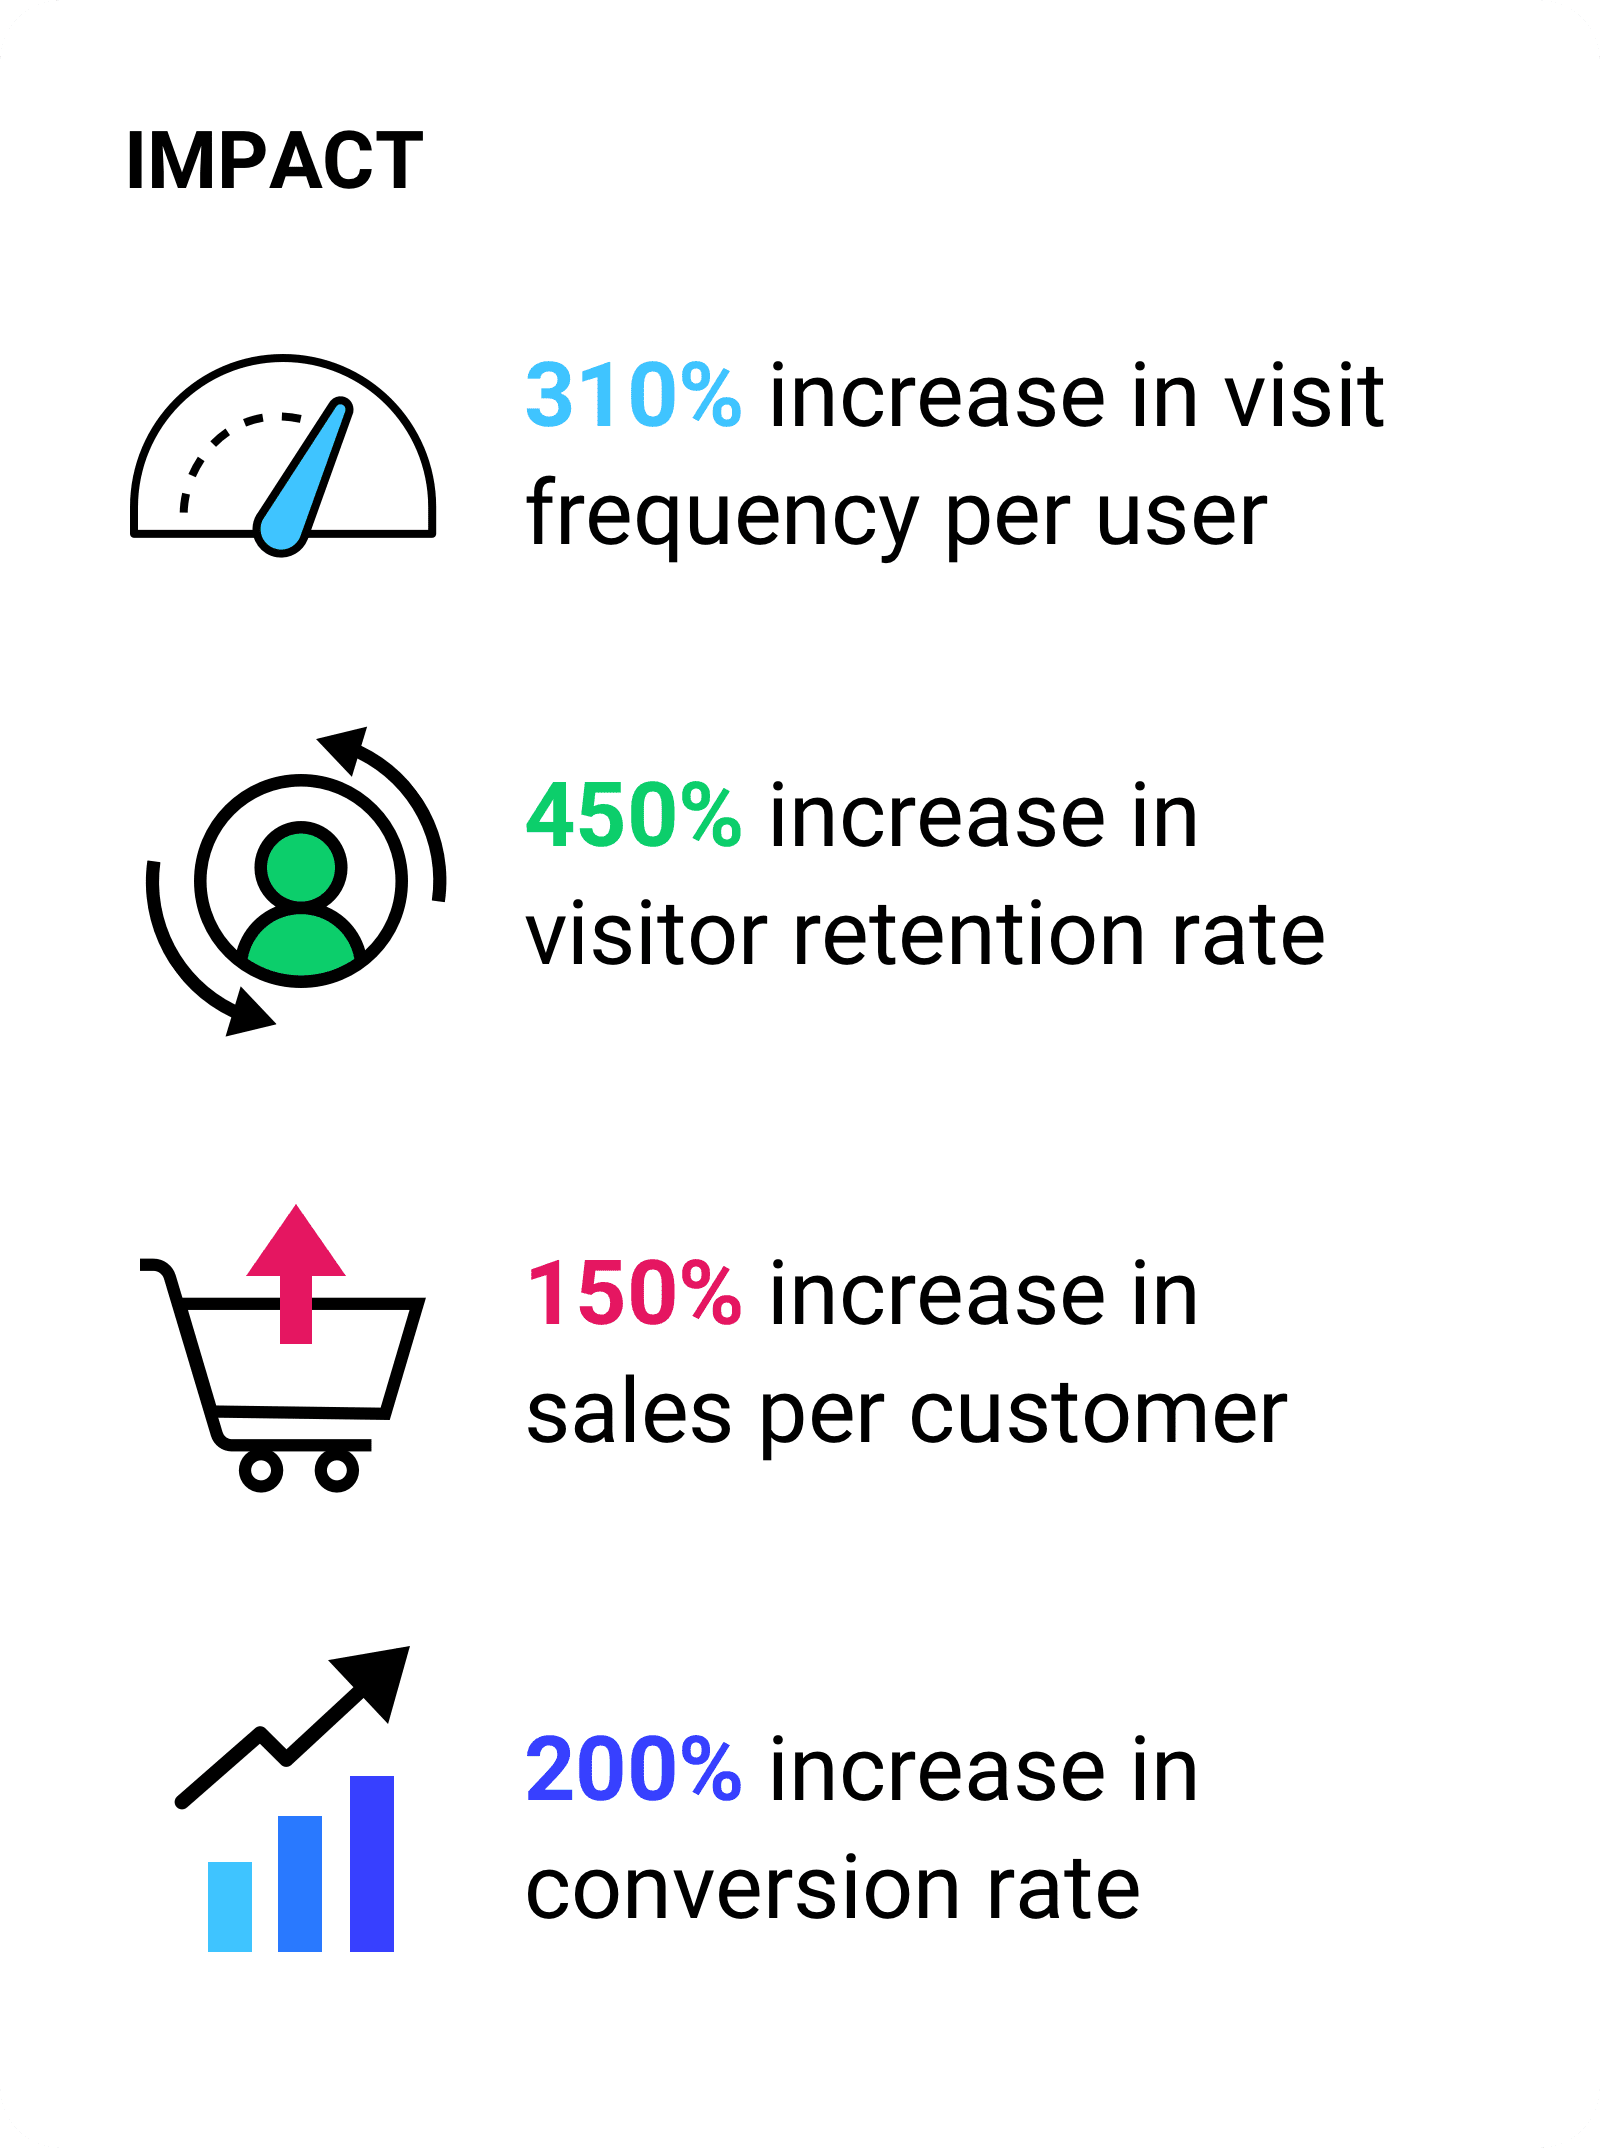 Steigerung der Besuchshäufigkeit pro Nutzer um 310 %  Steigerung der Besucherbindung um 450 % 150% mehr Umsatz pro Kunde, 200% höhere Conversion-Rate